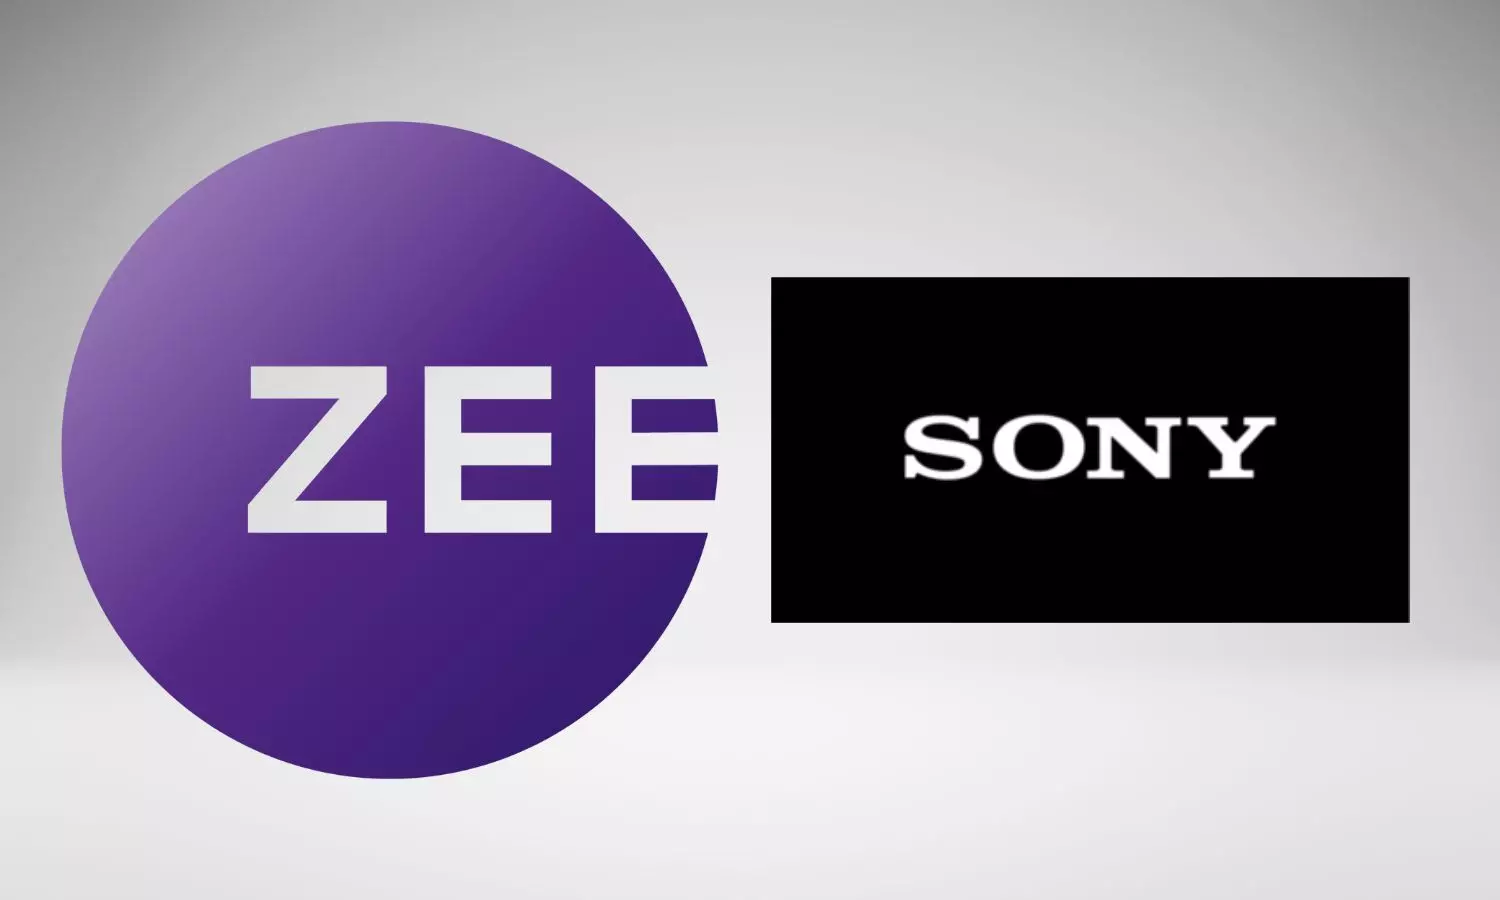 Zee, Sony logos